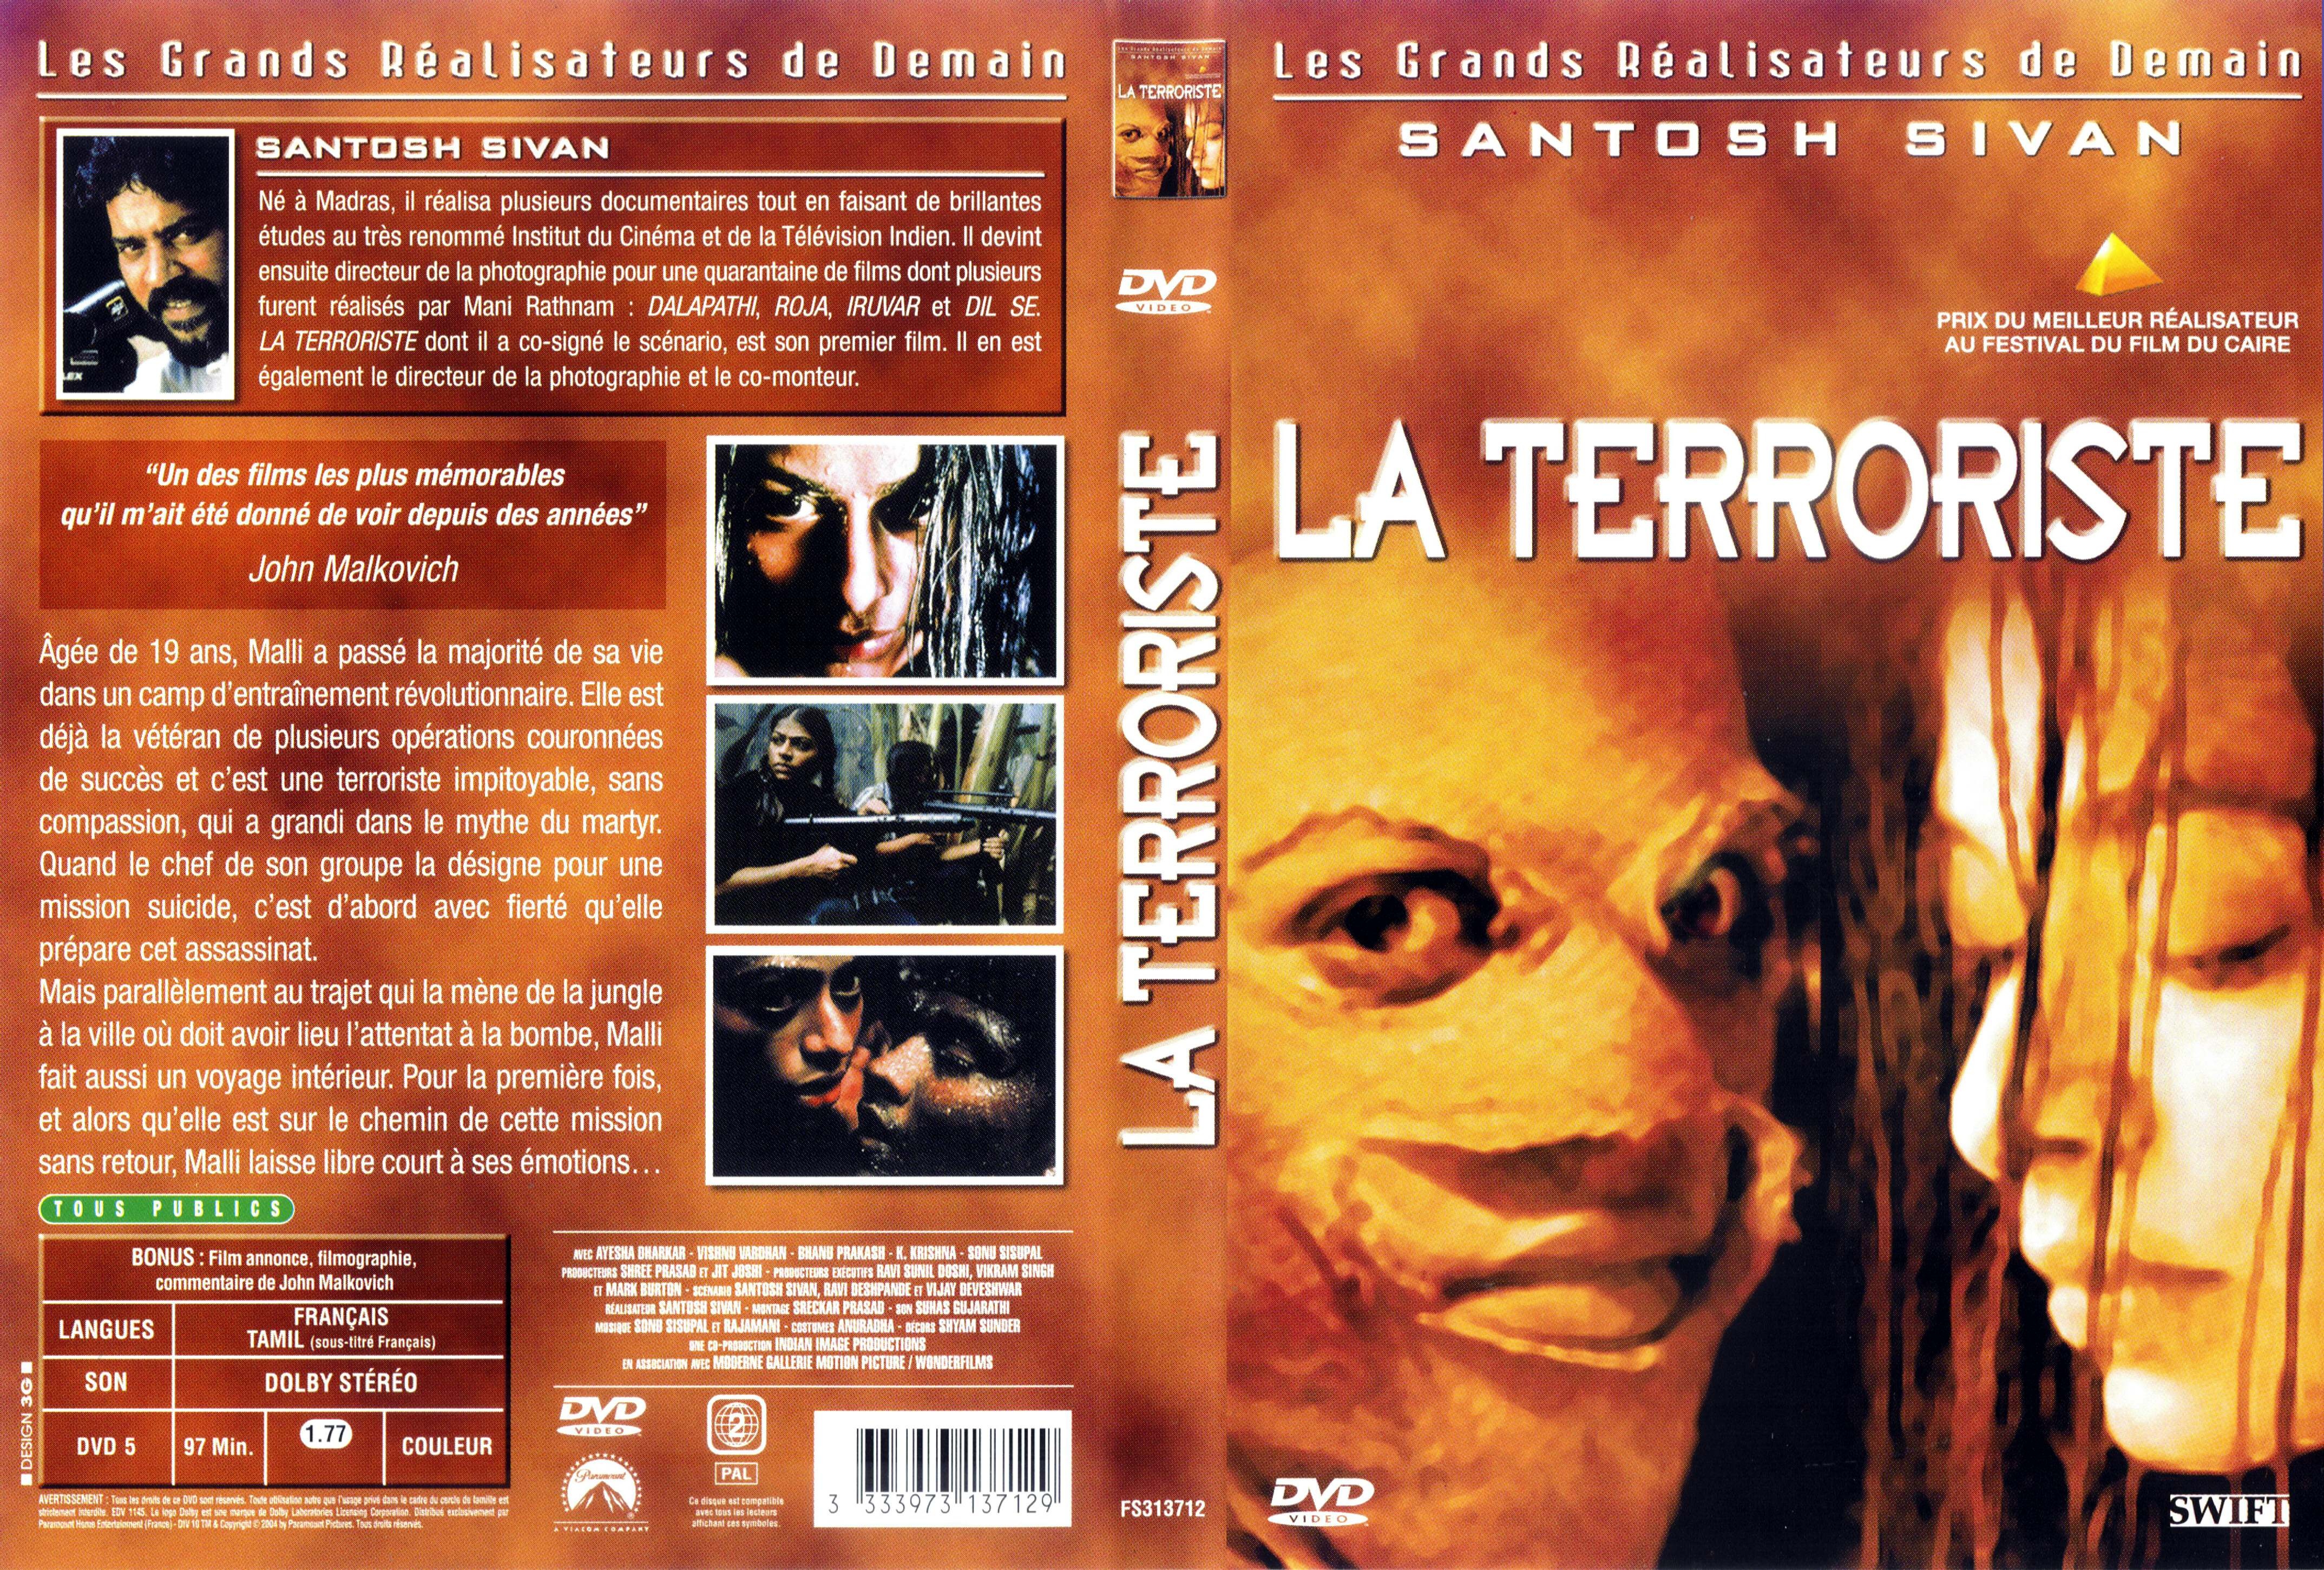 Jaquette DVD La terroriste